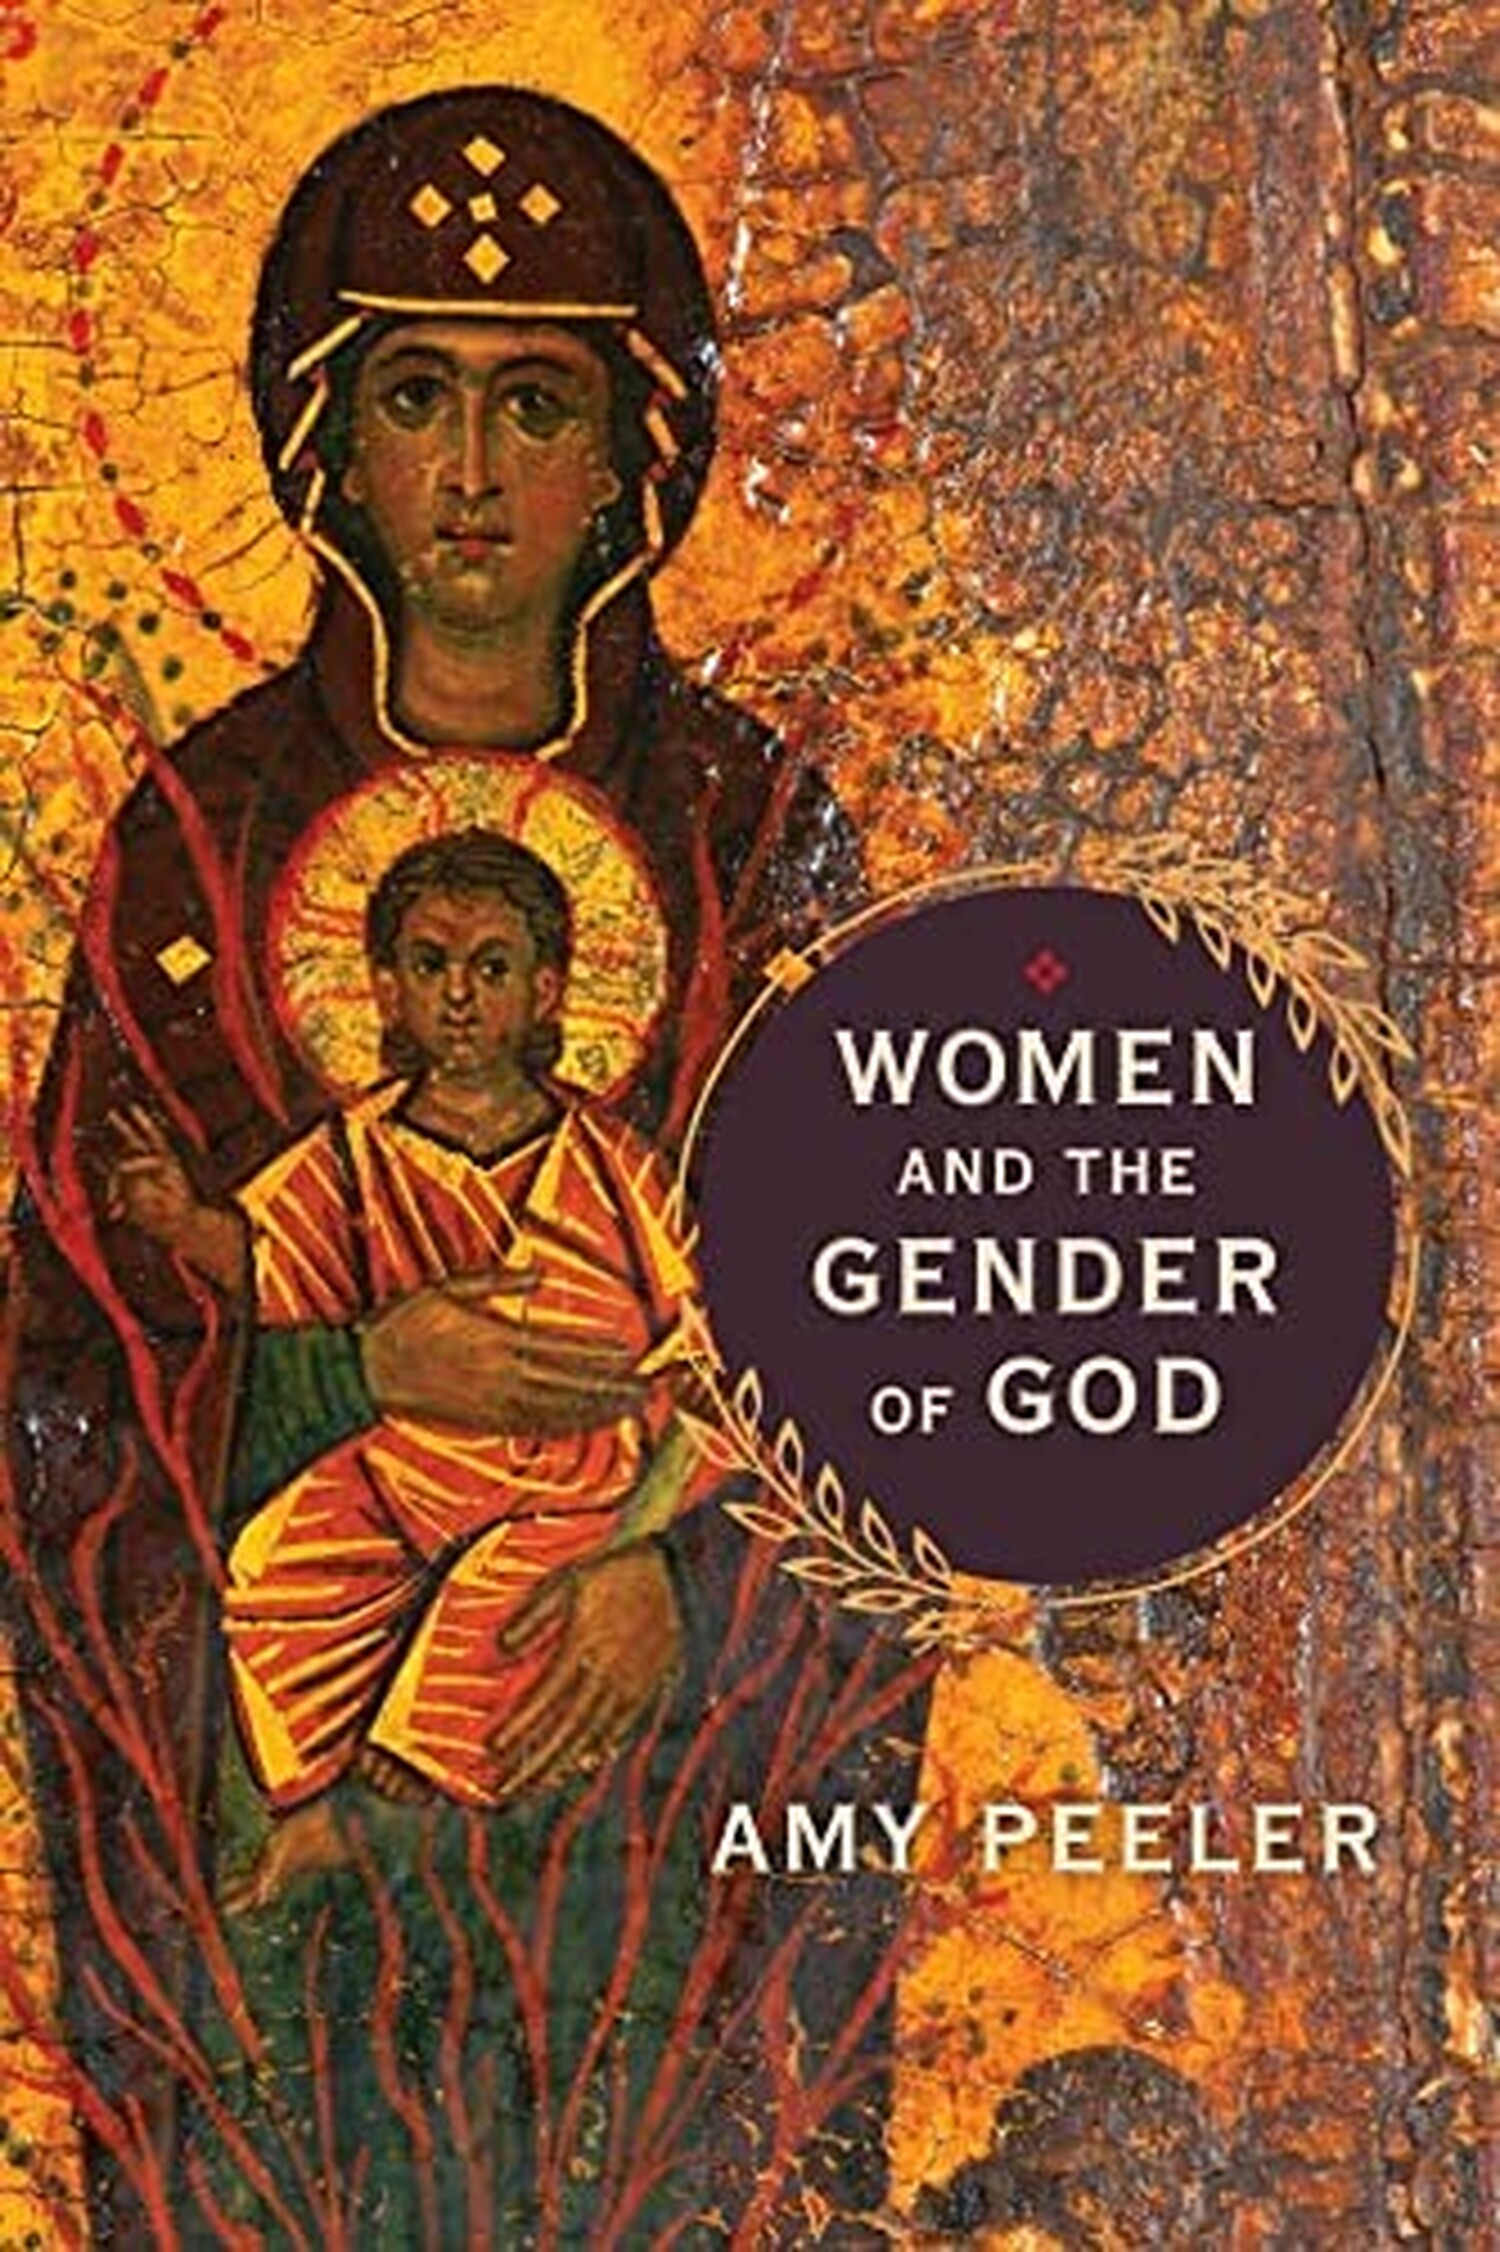 Amy-PeelerThe-Gender-of-God.jpg